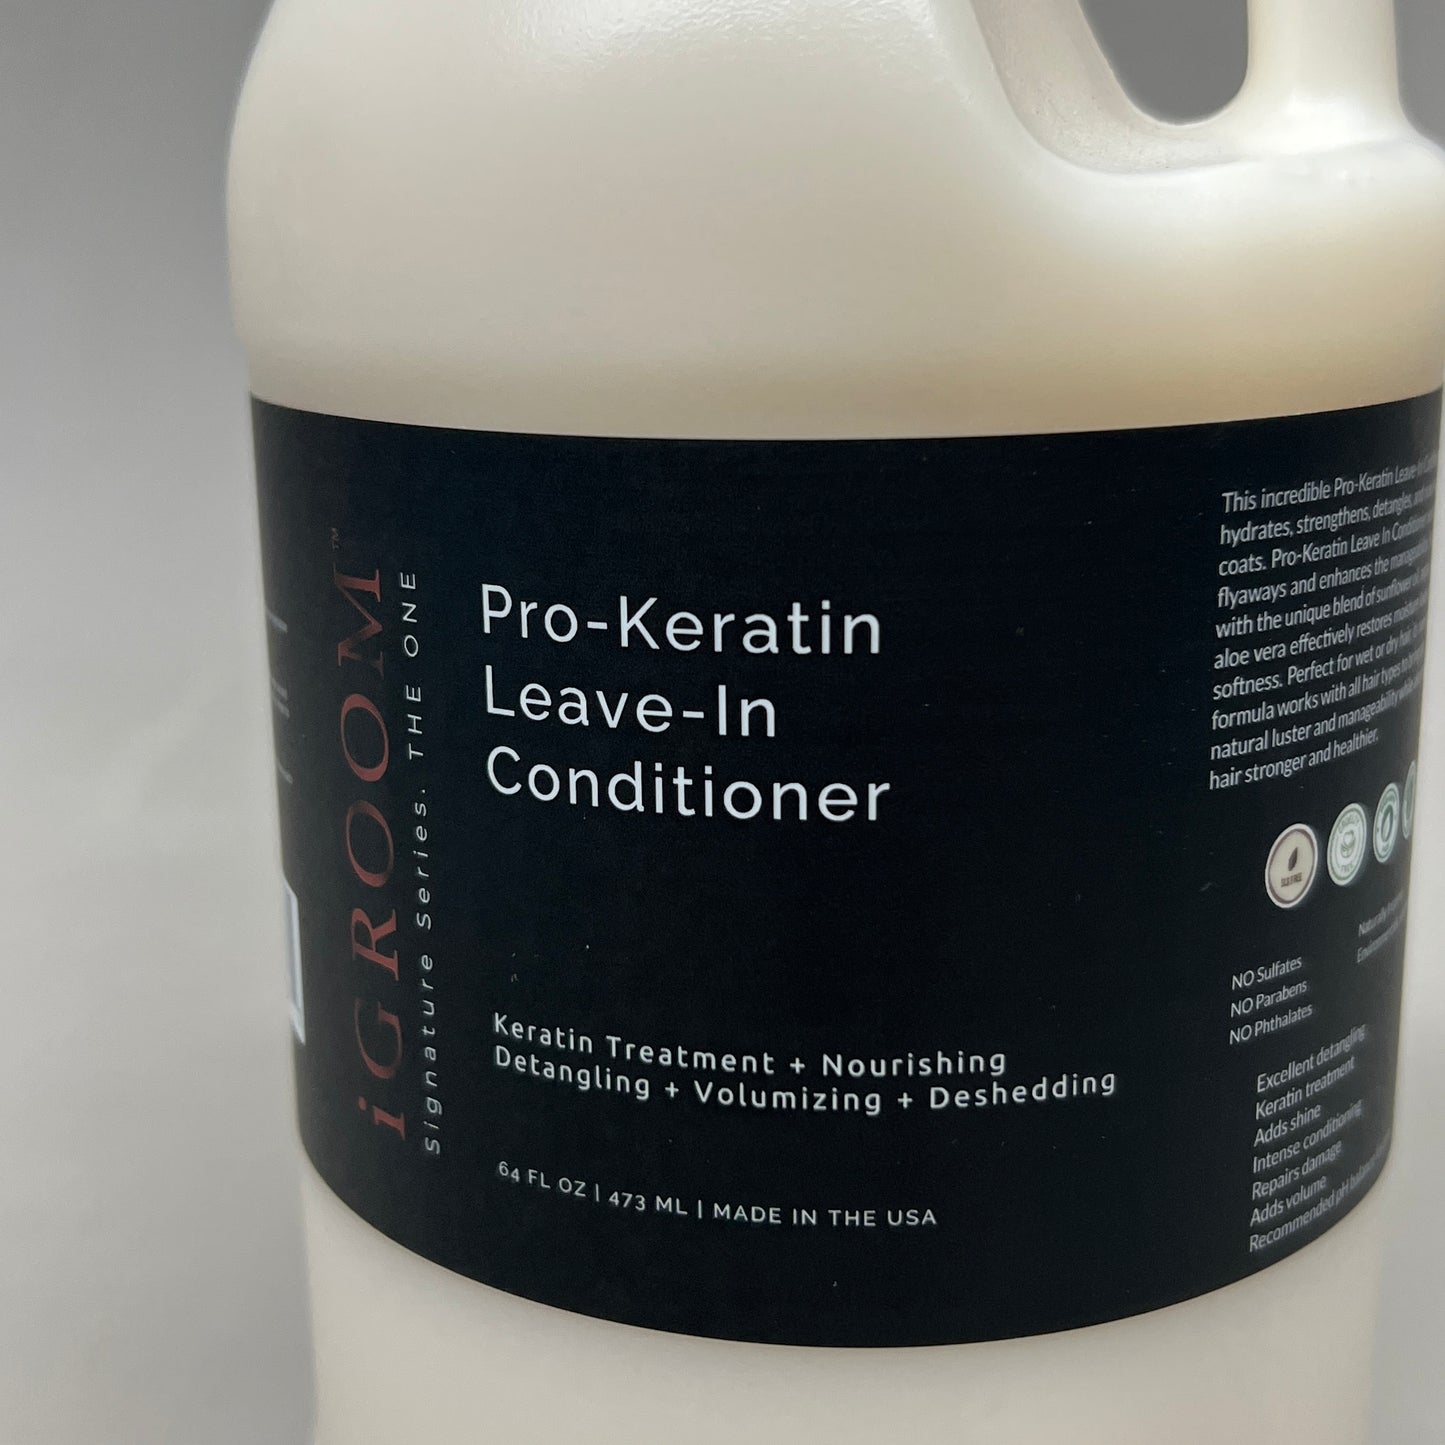 IGROOM Pro-Keratin Leave-In Pet Conditioner, Luxury Pet Care 64 fl oz (New)